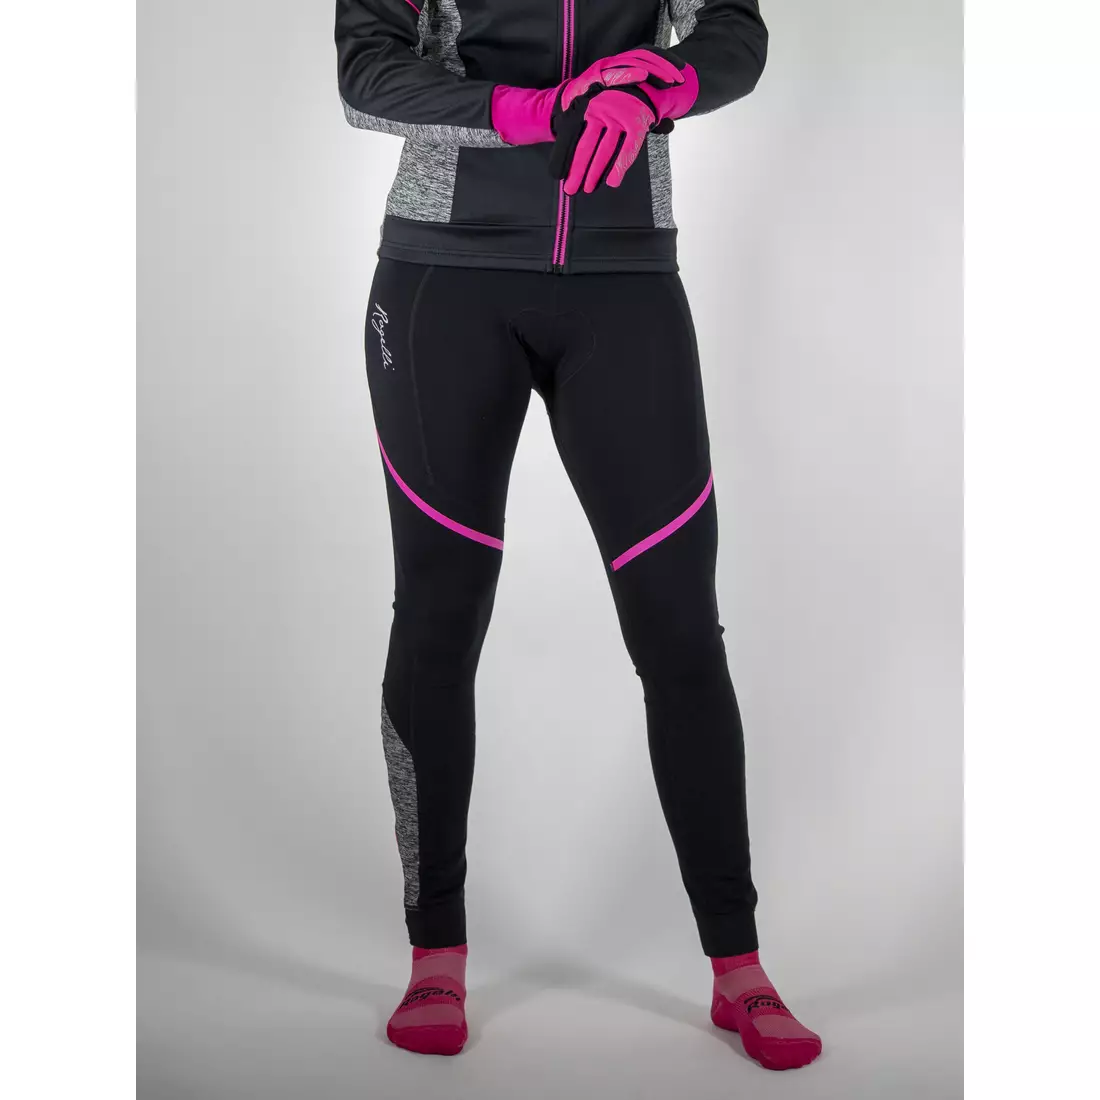 ROGELLI CAROU 2.0 dámske zateplené cyklistické nohavice, traky, čierno-ružovo-šedé